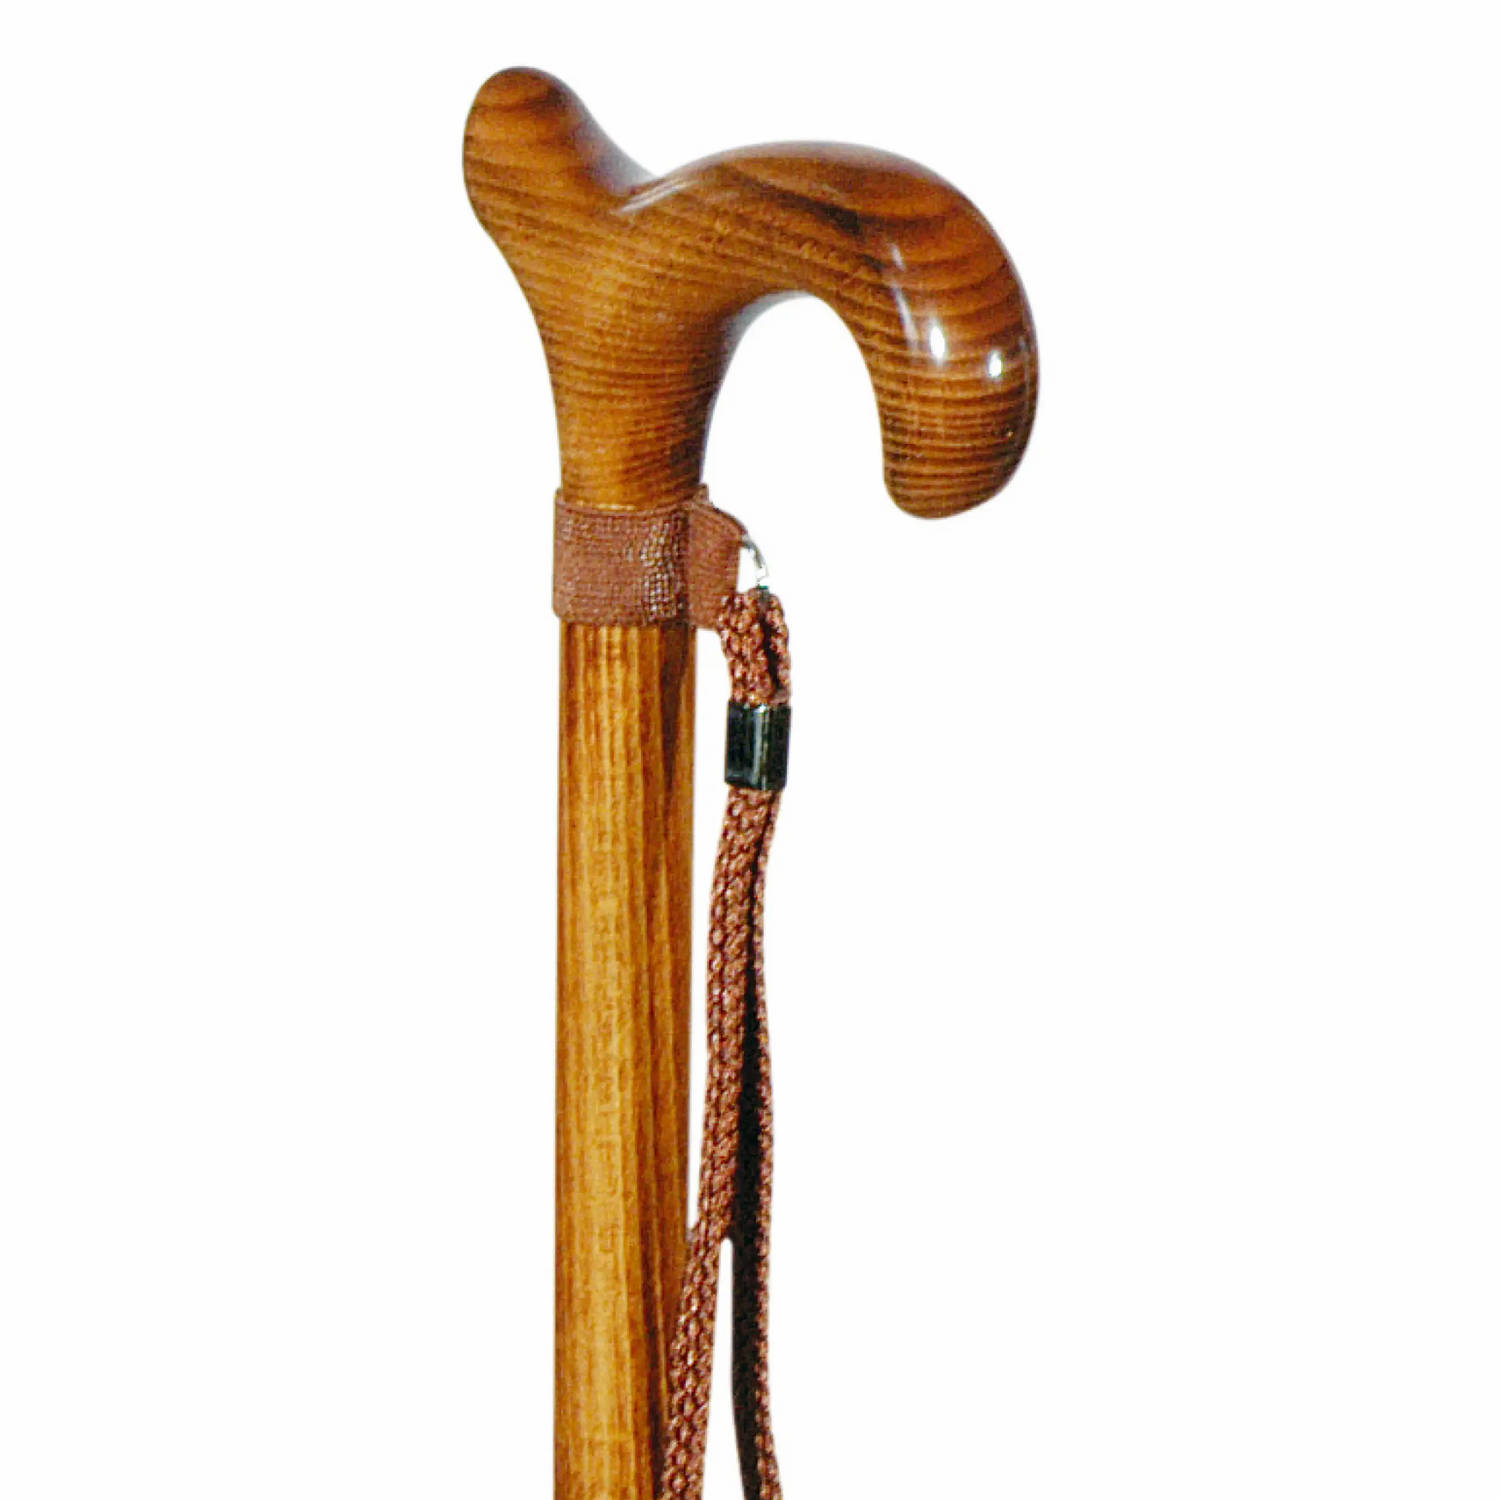 Classic Canes - Houten wandelstok - Beukenhout - Bruin - geschroeid - Derby handvat - Wandelstokken - Voor heren en dames - Lengte 92 cm - Met polsbandje - Wandelstok hout